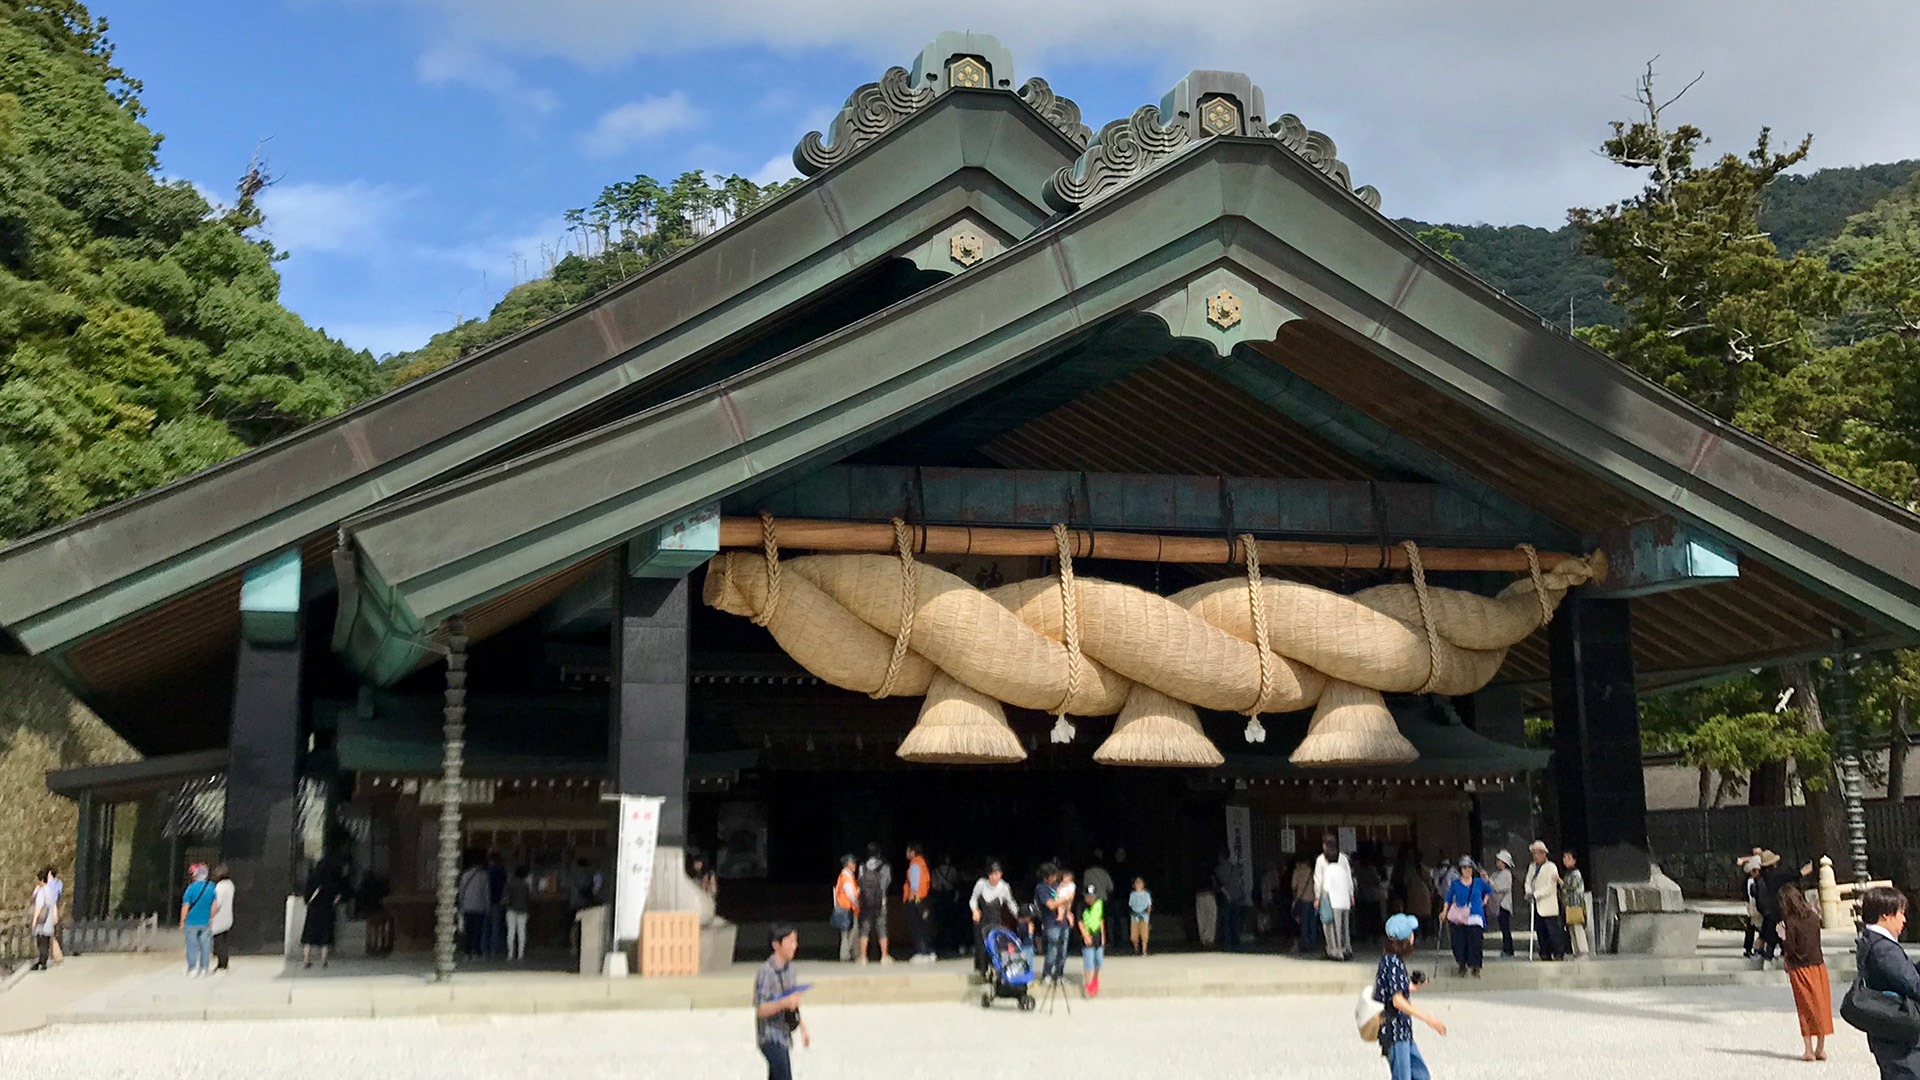 Entrance to Izuma Taisha Shrine in Japan